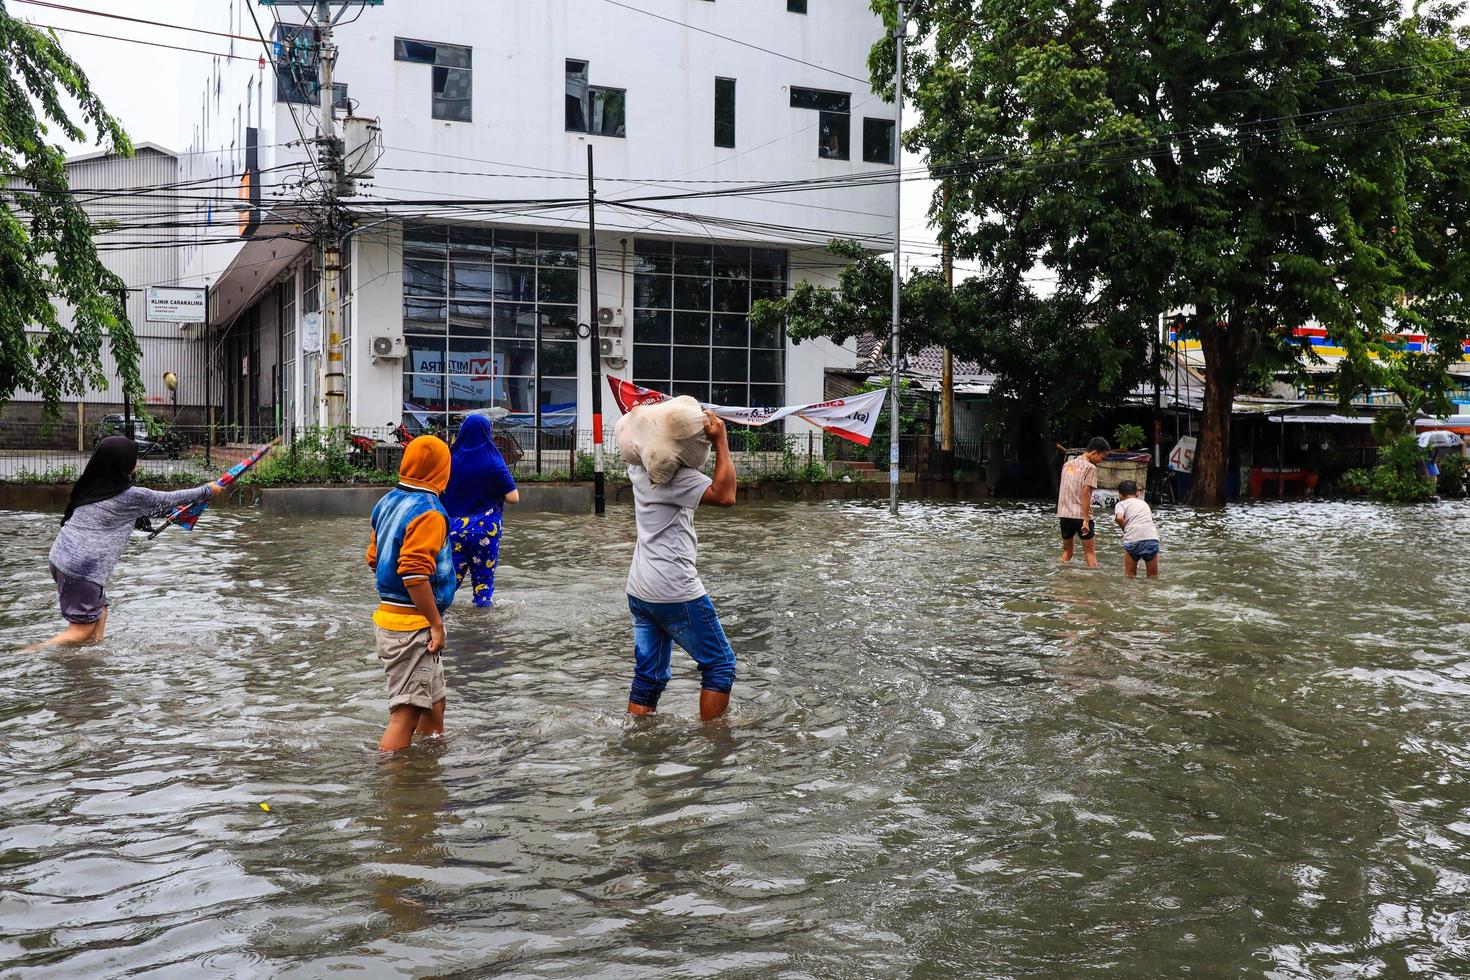 semarang, décembre 2022. plusieurs personnes transportent des sacs remplis de nourriture et de vêtements pour se préparer à l'évacuation après l'inondation de leur maison photo